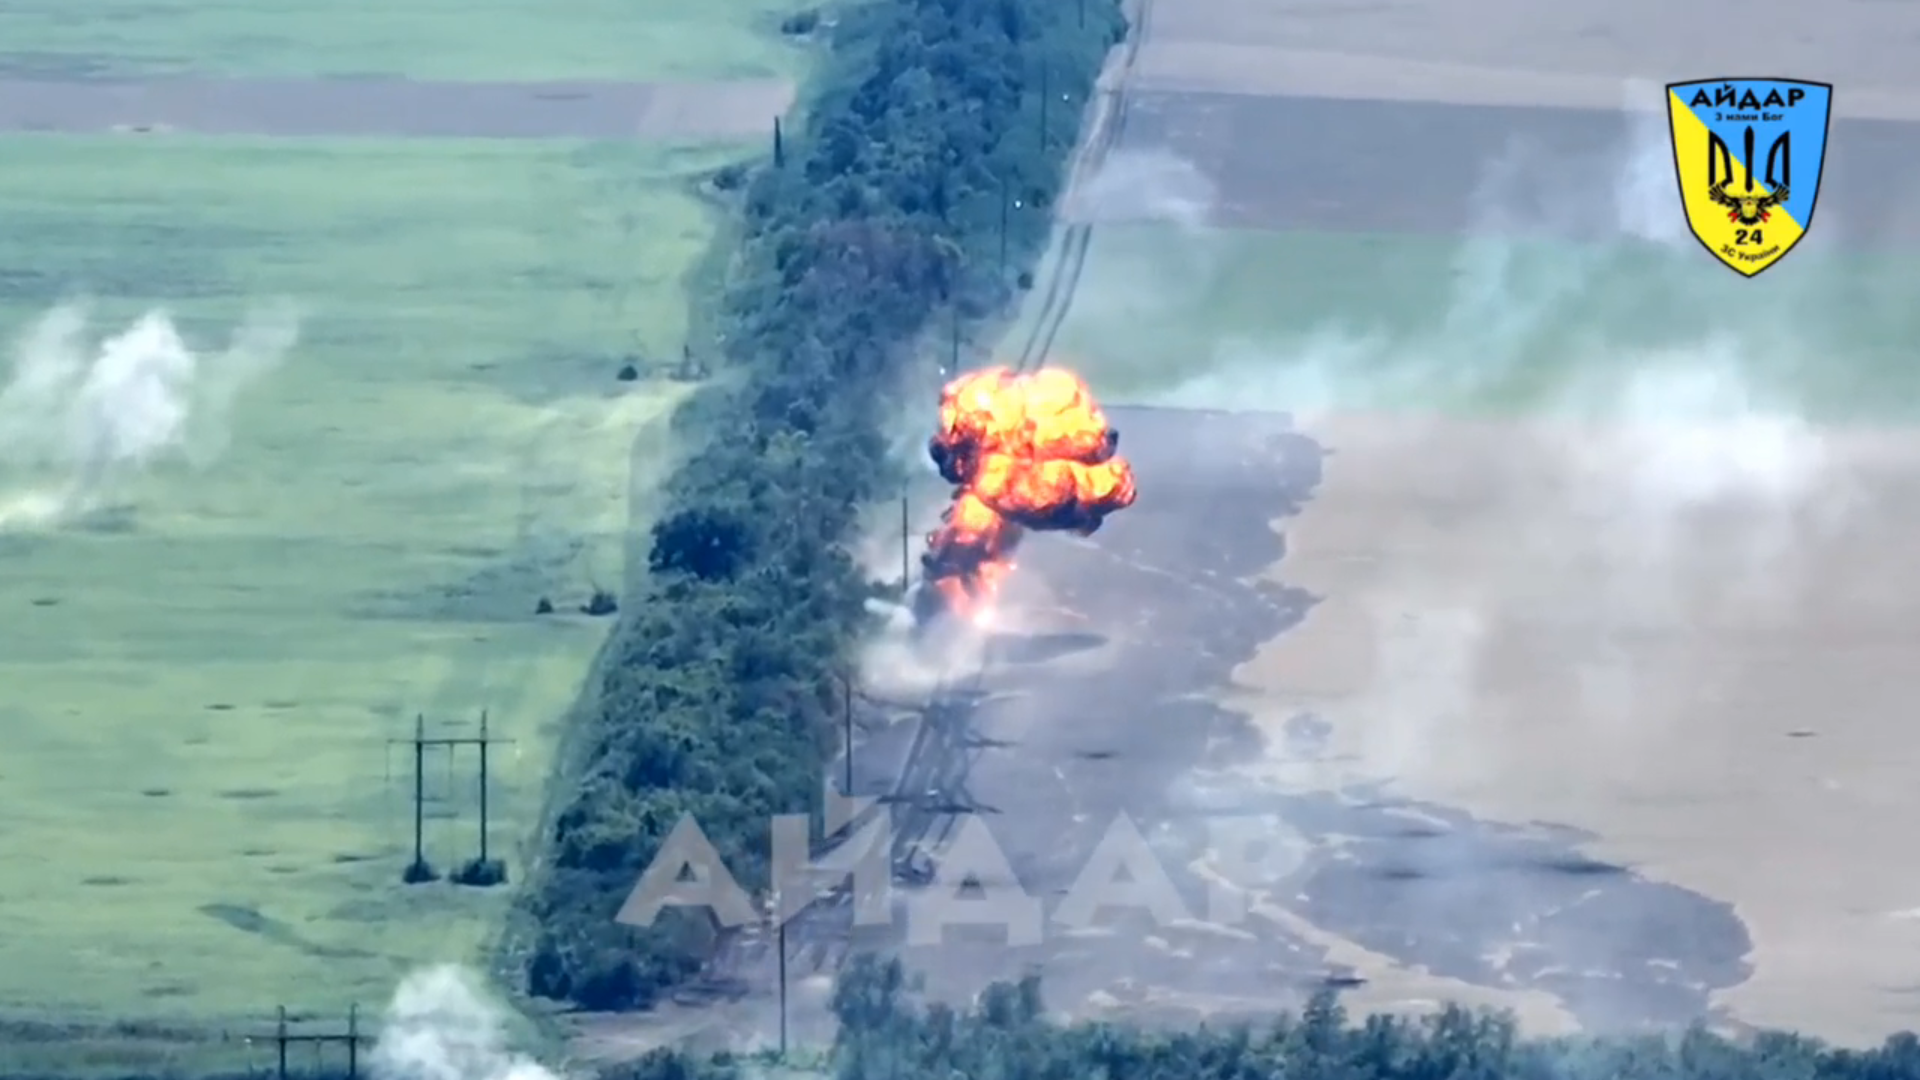 Siły Zbrojne Ukrainy pokazały rzadki film przedstawiający zniszczenie rosyjskiego czołgu jednym strzałem bezpośrednim trafieniem z haubicy D-30